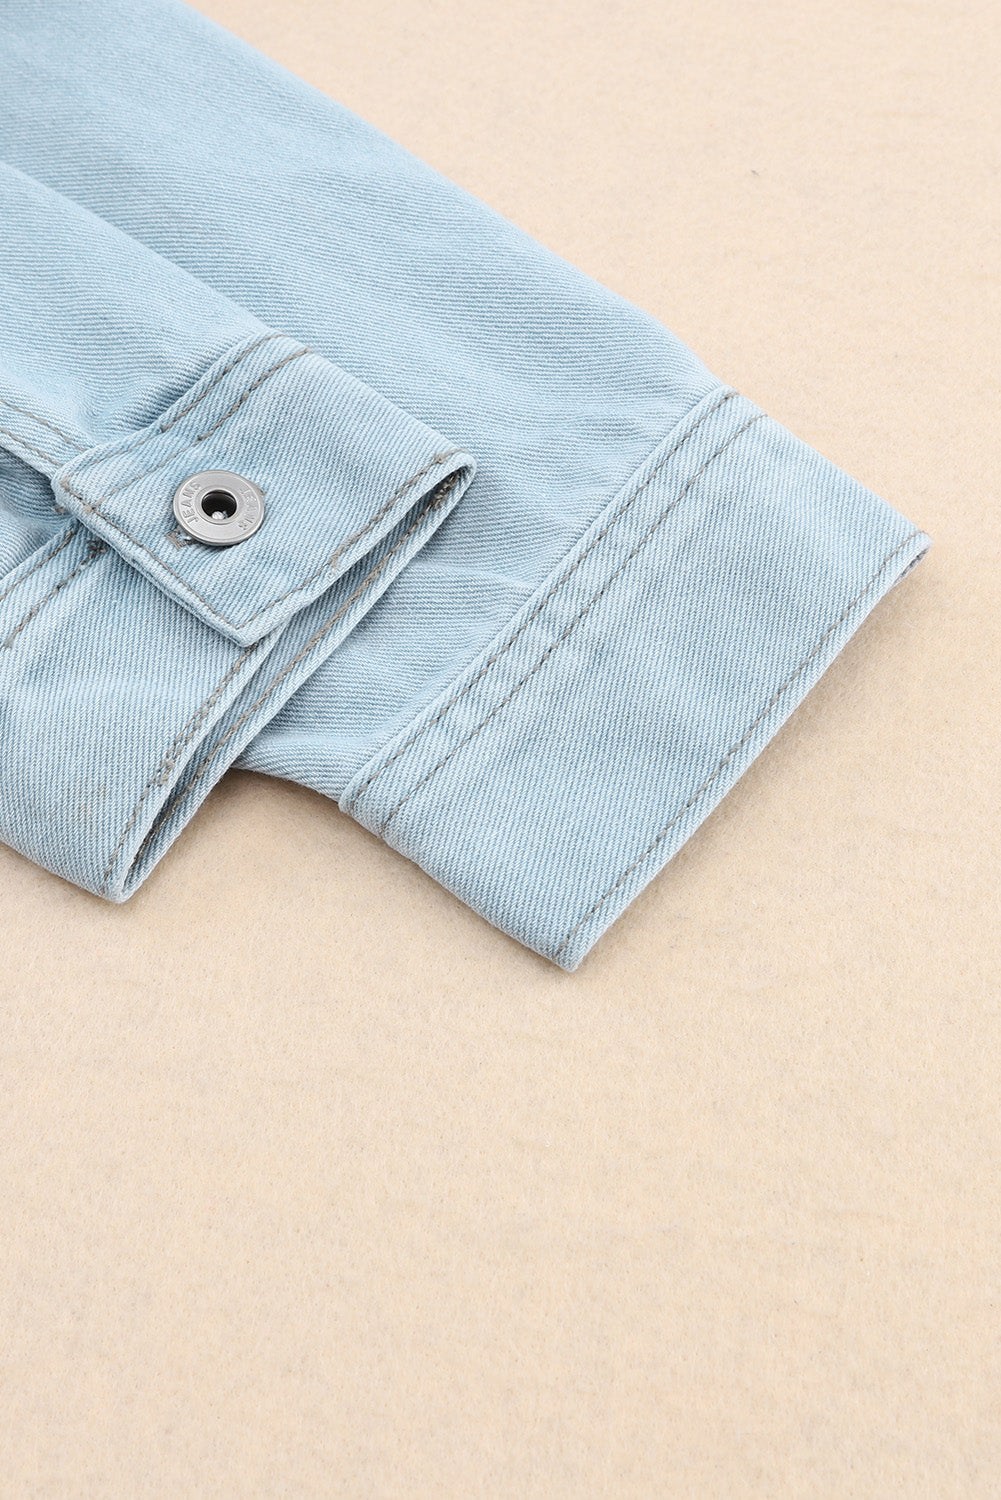 Himmelblaue, geknöpfte Jeansjacke mit unbearbeitetem Saum und Pattentaschen